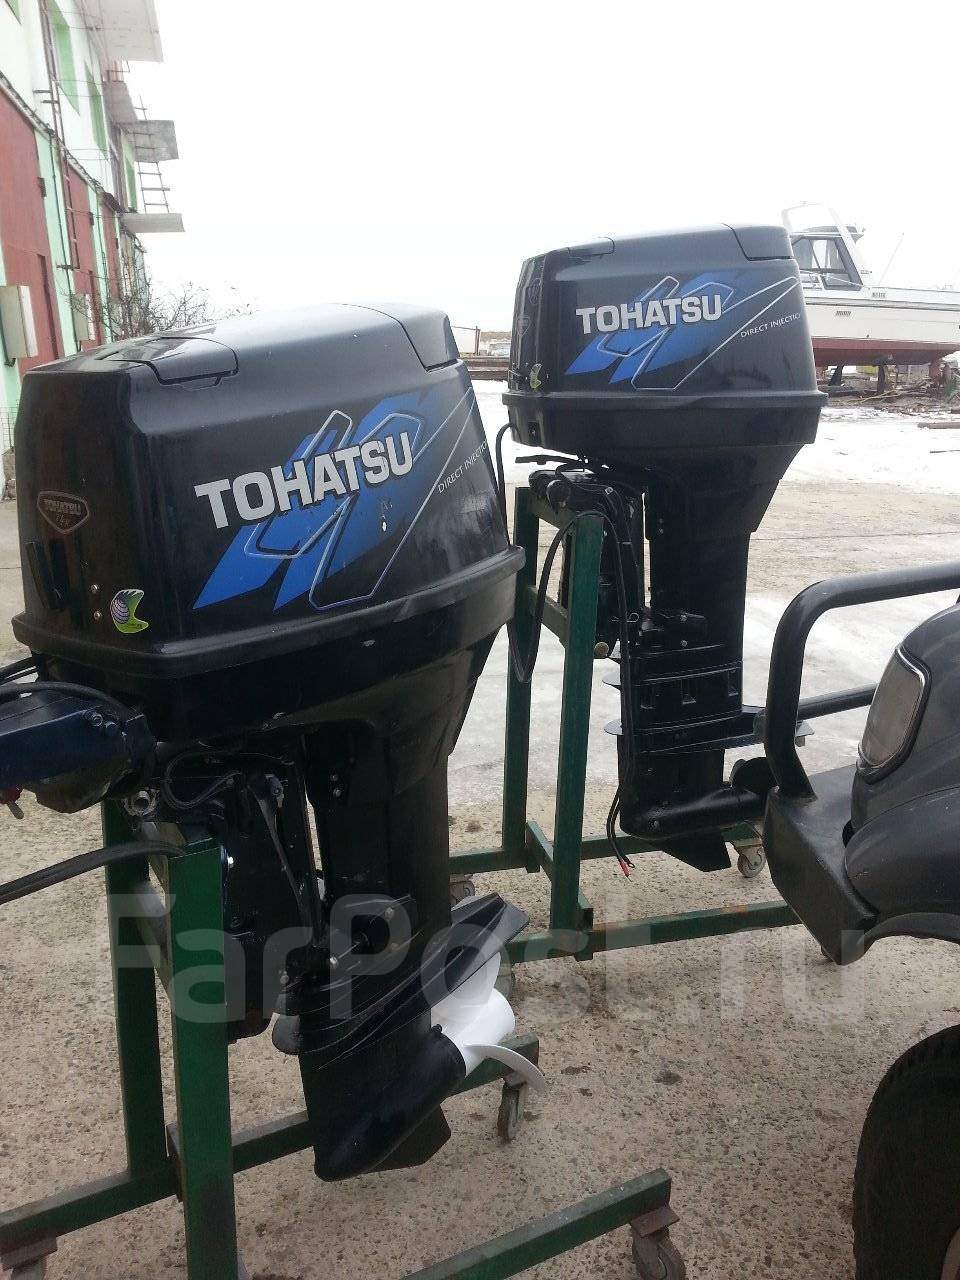 Лодочные моторы тохатсу купить 2 тактный. Лодочный мотор Tohatsu 90. Тохатсу 70 2т. Tohatsu 70 TLDI. Мотор Tohatsu mb70 TLDI.